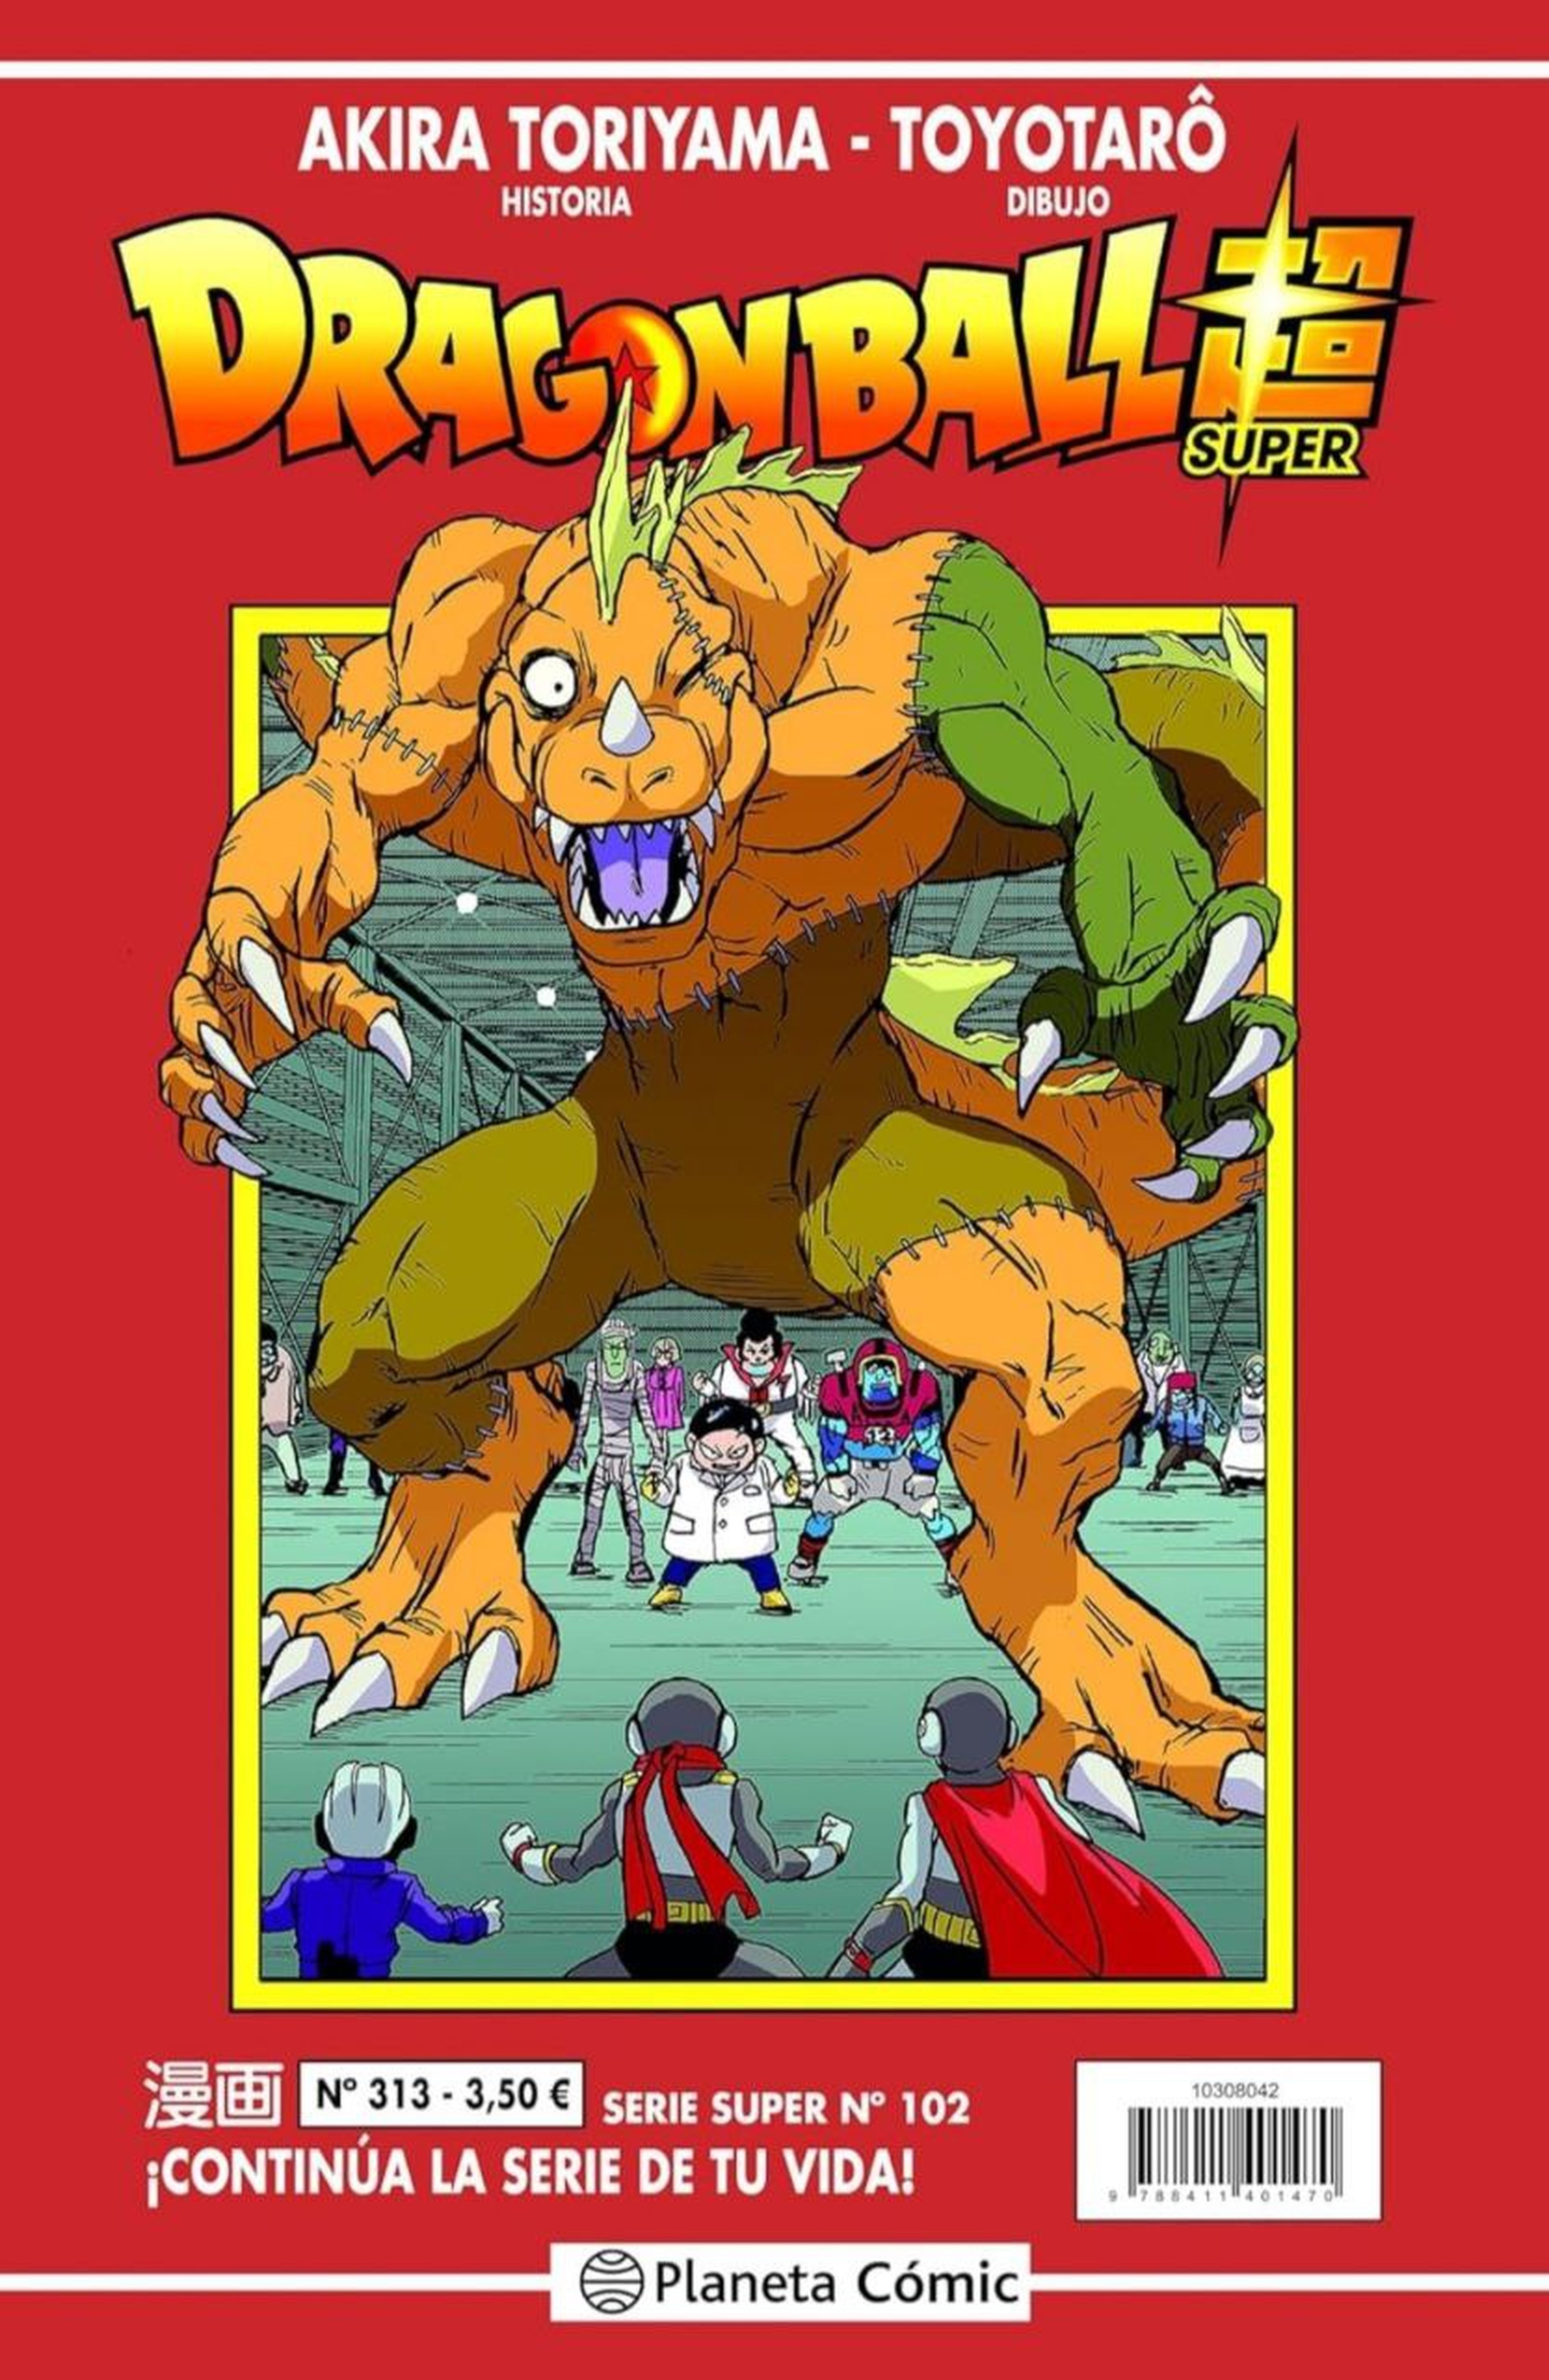 Portada y fecha de lanzamiento del número 102 de la Serie Roja de Dragon Ball Super con las bestias del Dr. Hedo como protagonistas